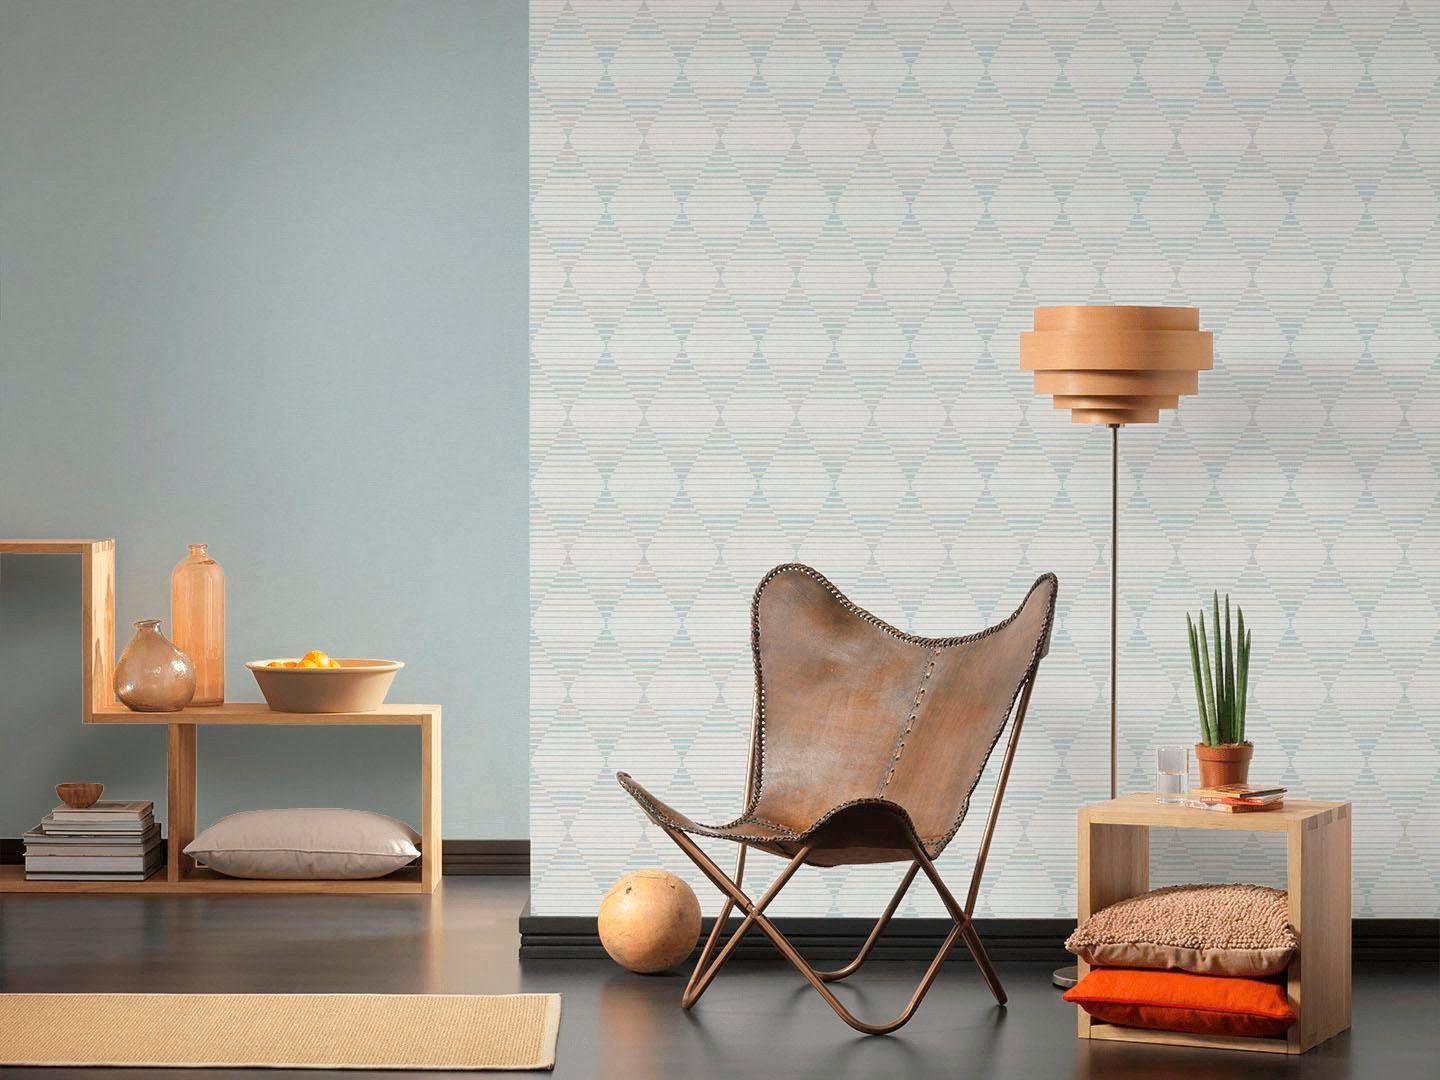 Vliestapete Linen walls blau/weiß/grau Création living Style, grafisch A.S. geometrisch,